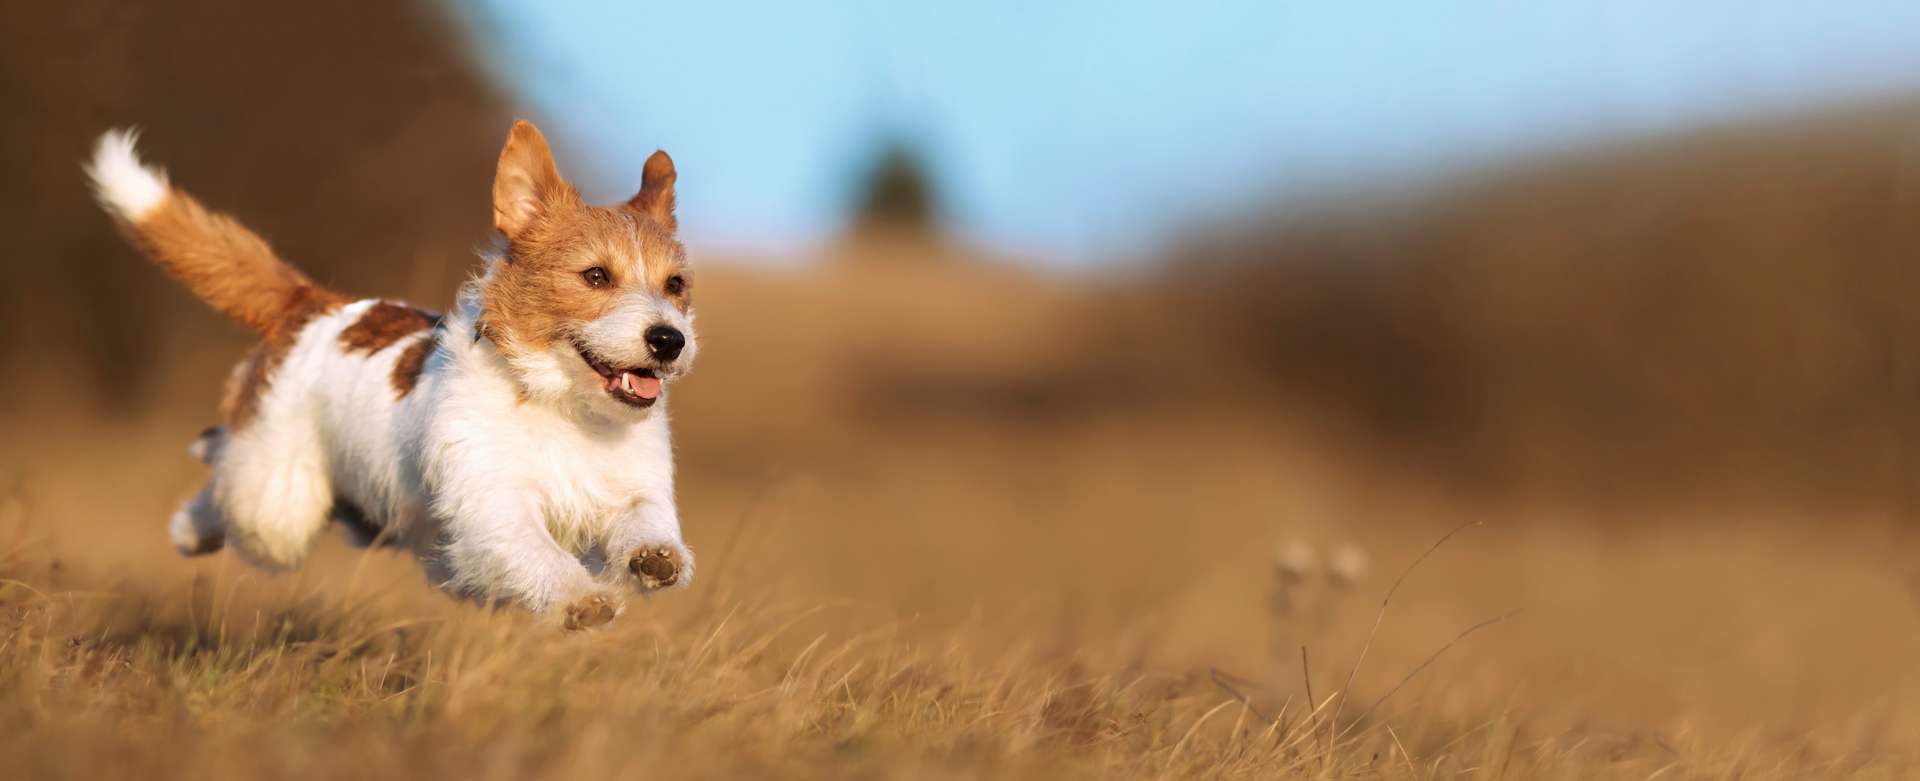 Vétérinaires cherchent chiens pour tester une pilule qui rallonge leur vie !